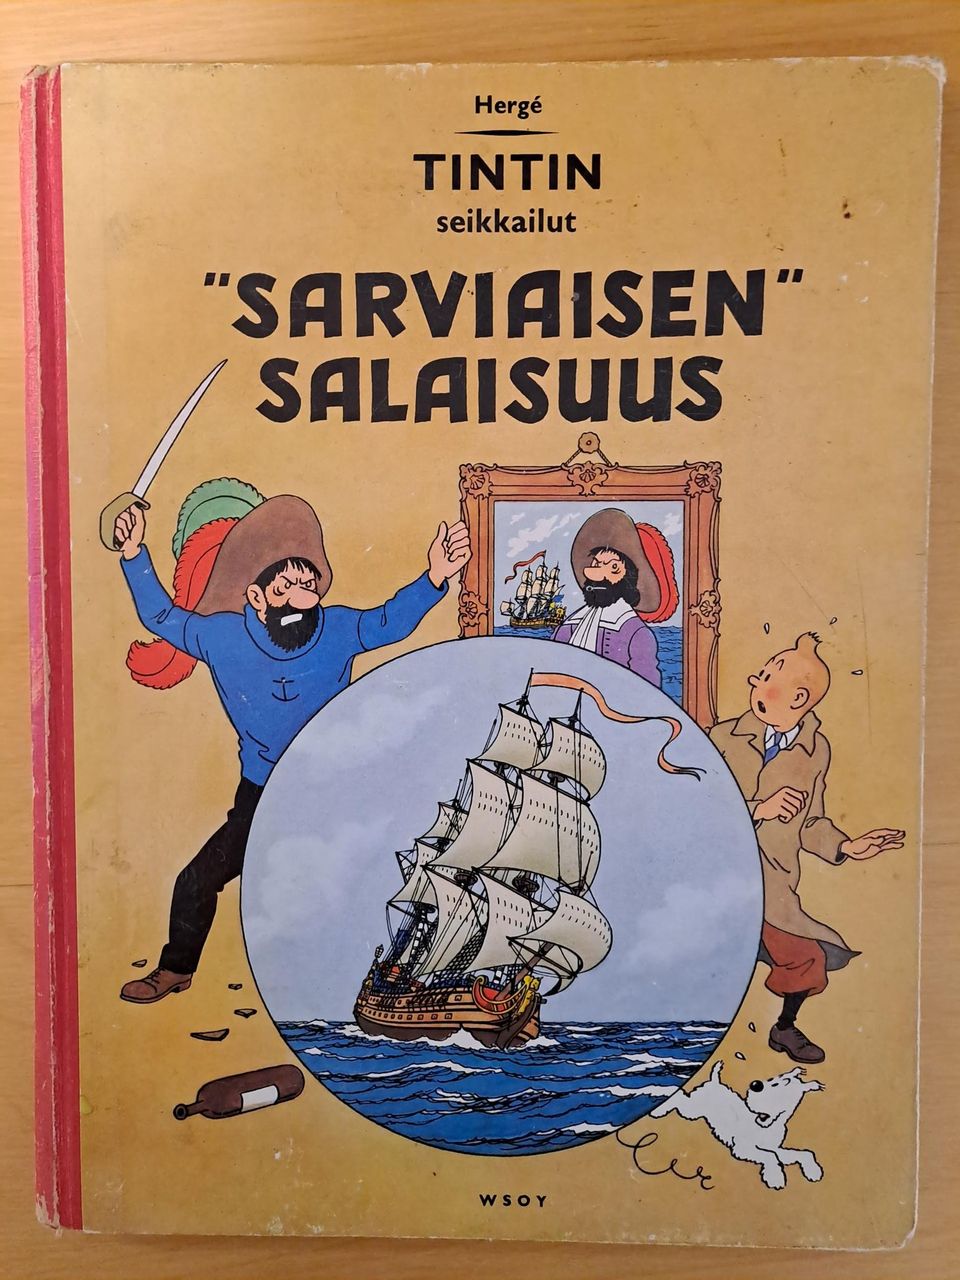 Tintin seikkailut - Sarviaisen salaisuus (1962)